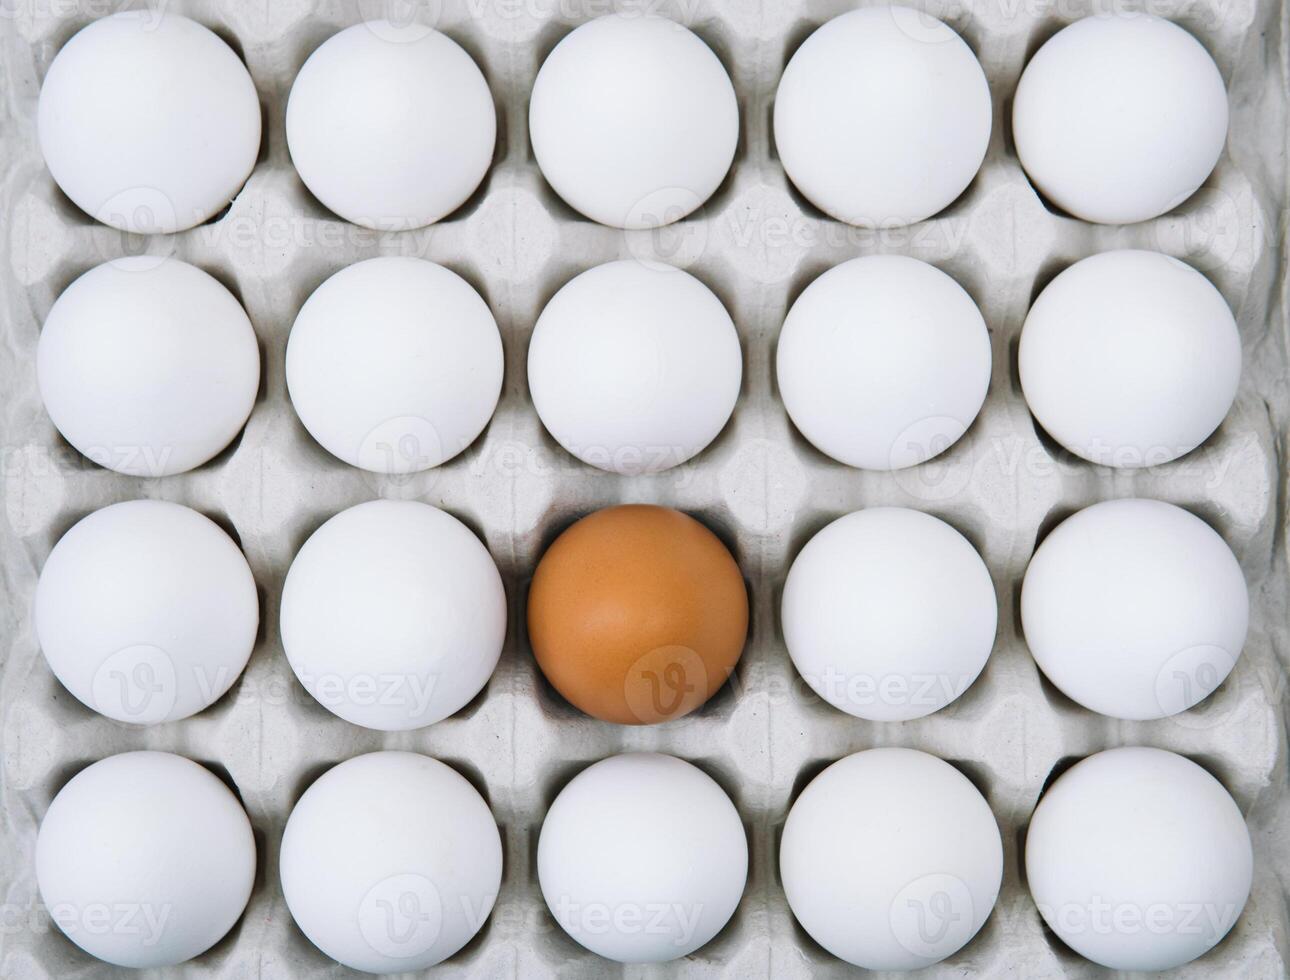 vers wit kip eieren en alleen bruin ei. vlak leggen van rauw kip eieren in ei papier doos. top visie natuurlijk biologisch ei. gezond echt voedsel foto